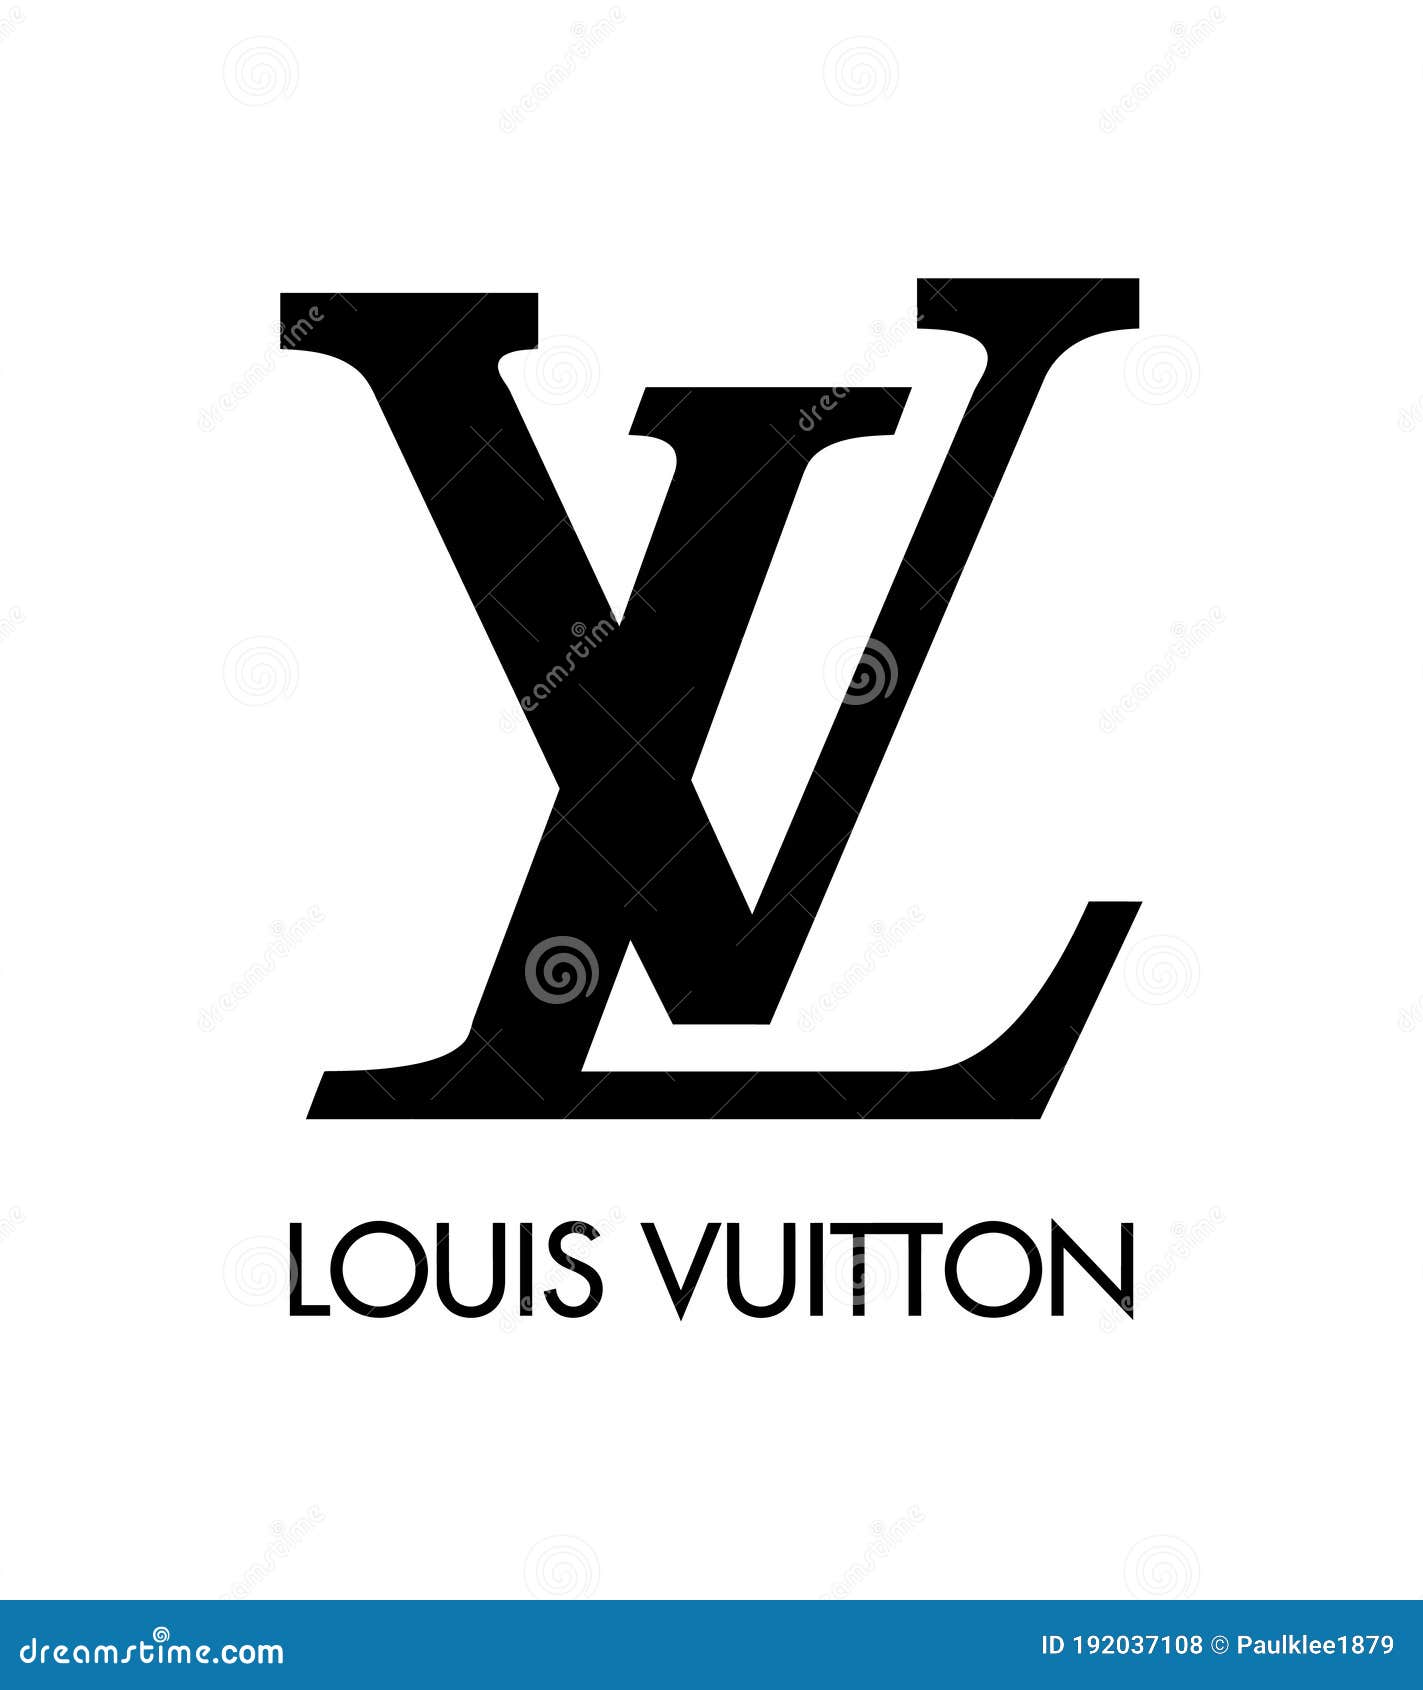 vuitton logo vector